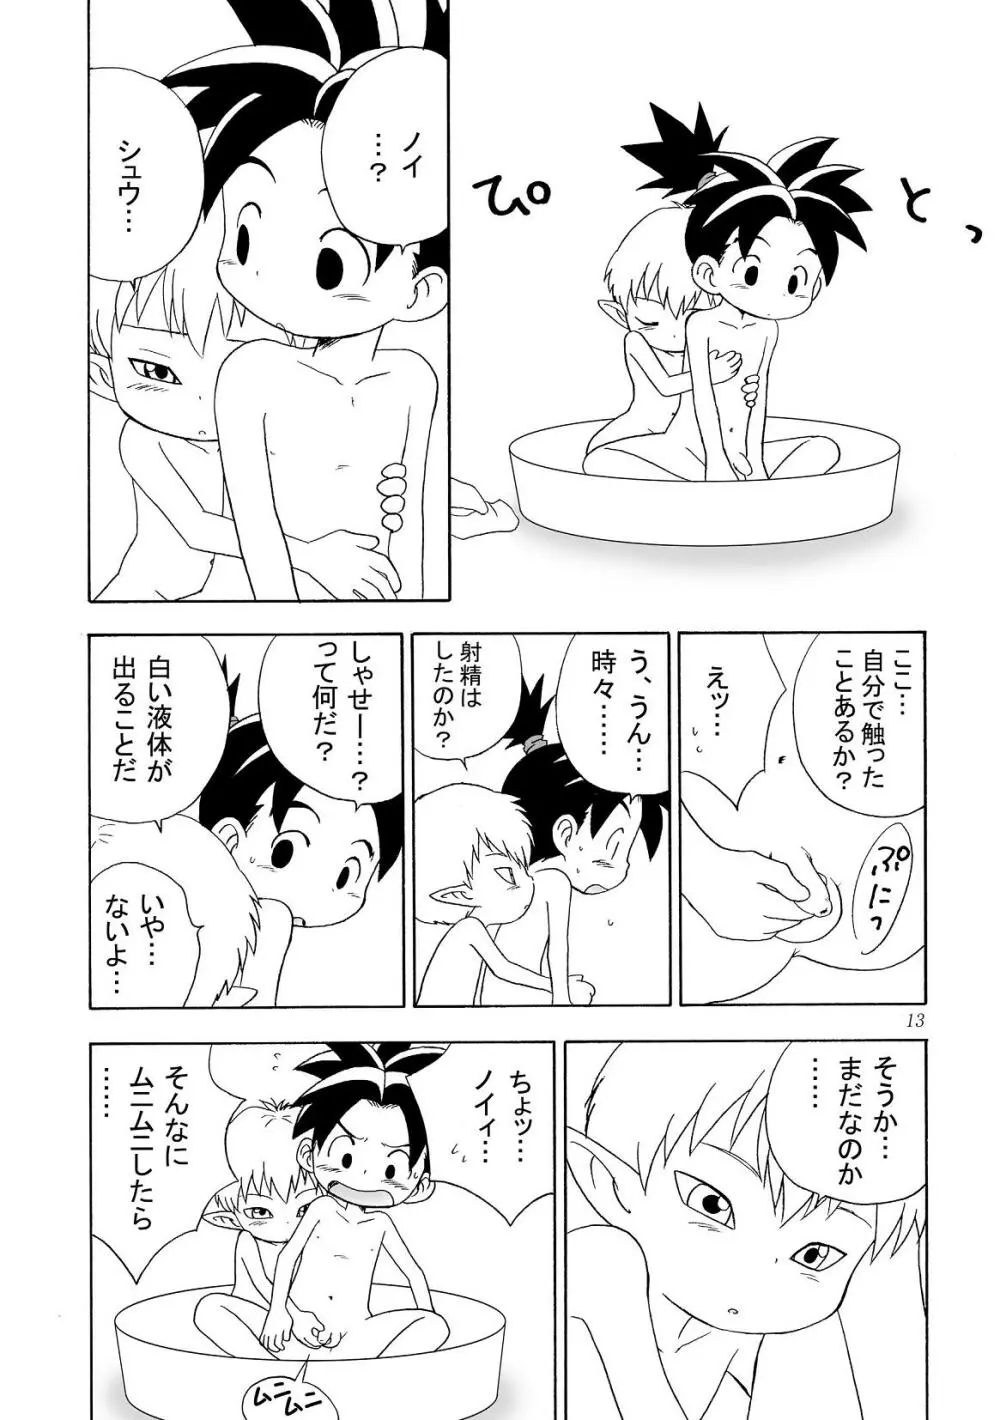 Yumemirukoro Sugitemo - One Page.13